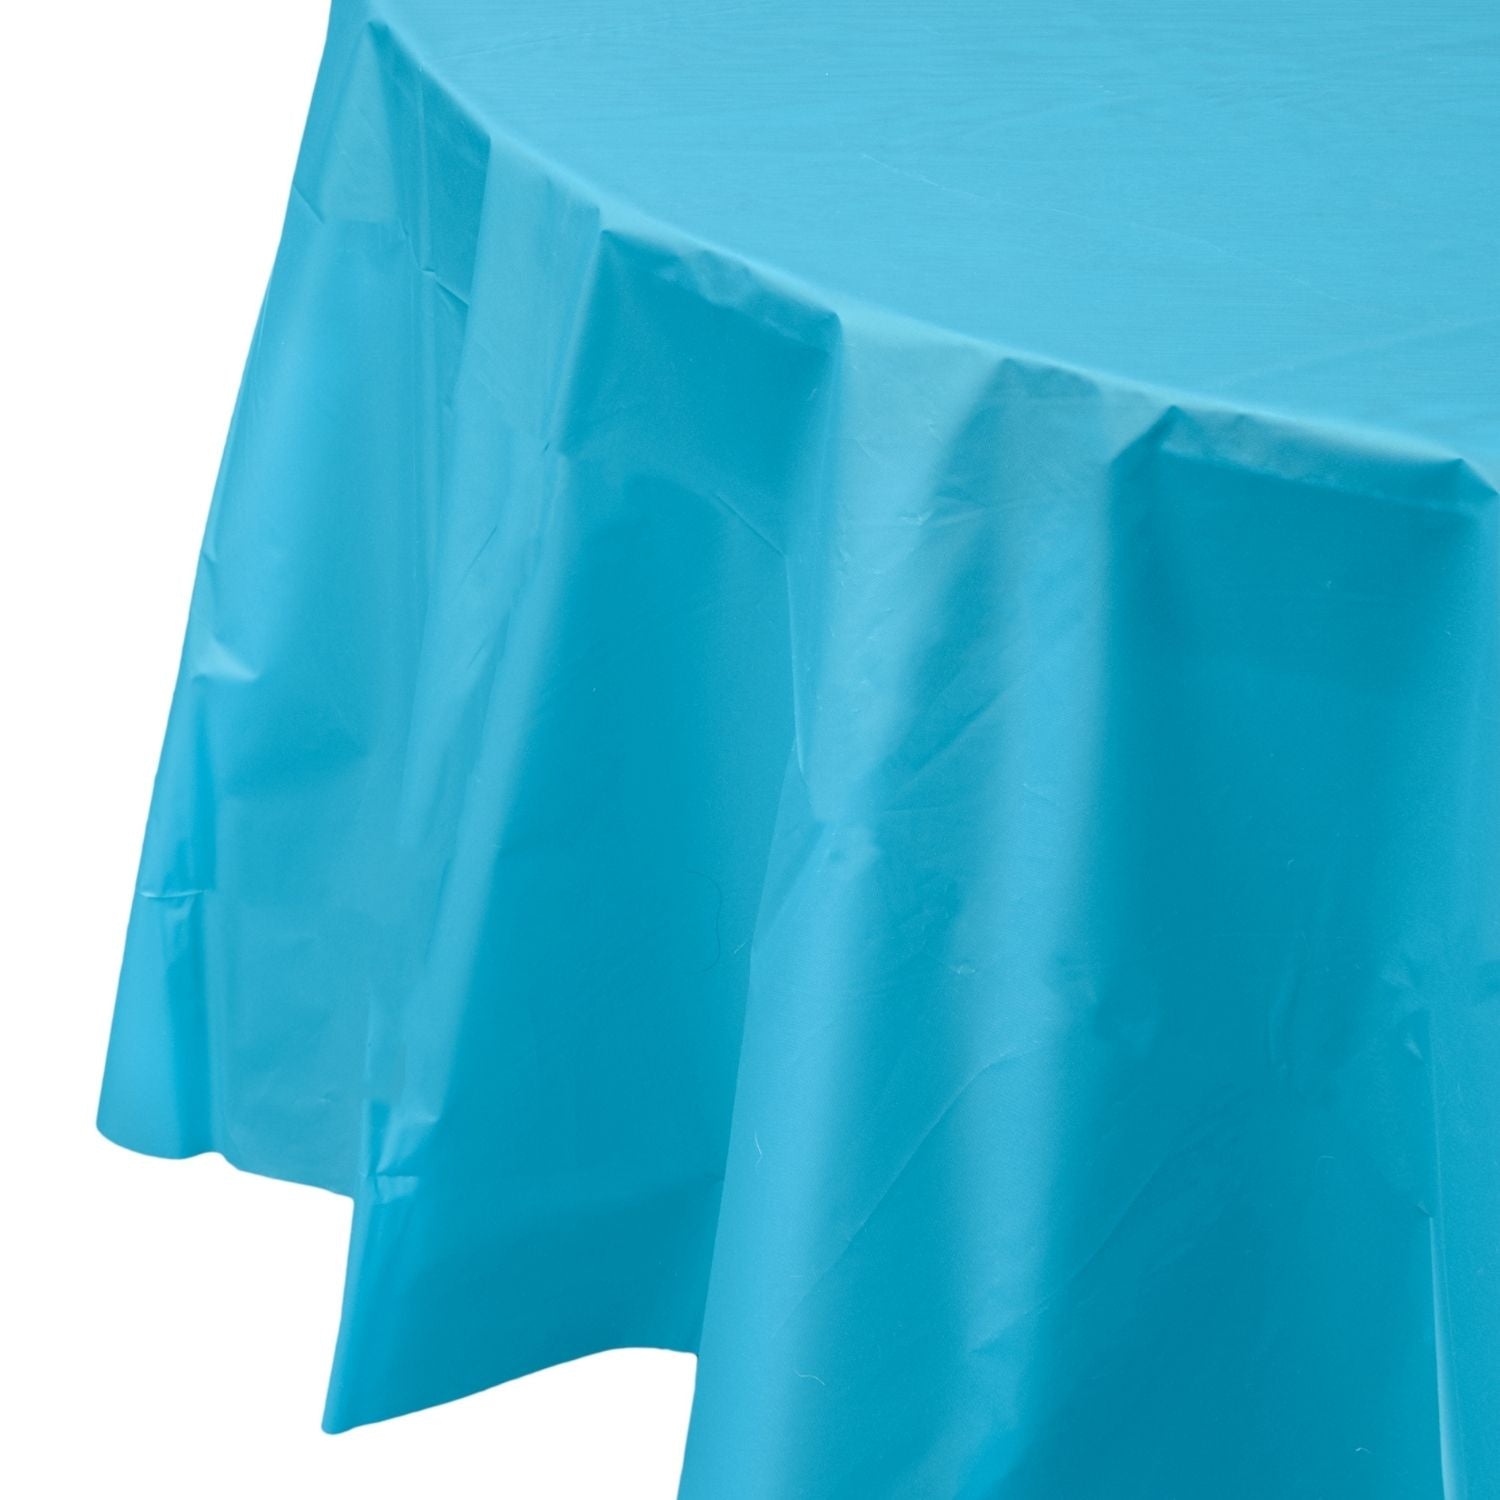 Premium Round Turquoise Plastic Tablecloth | 96 Count